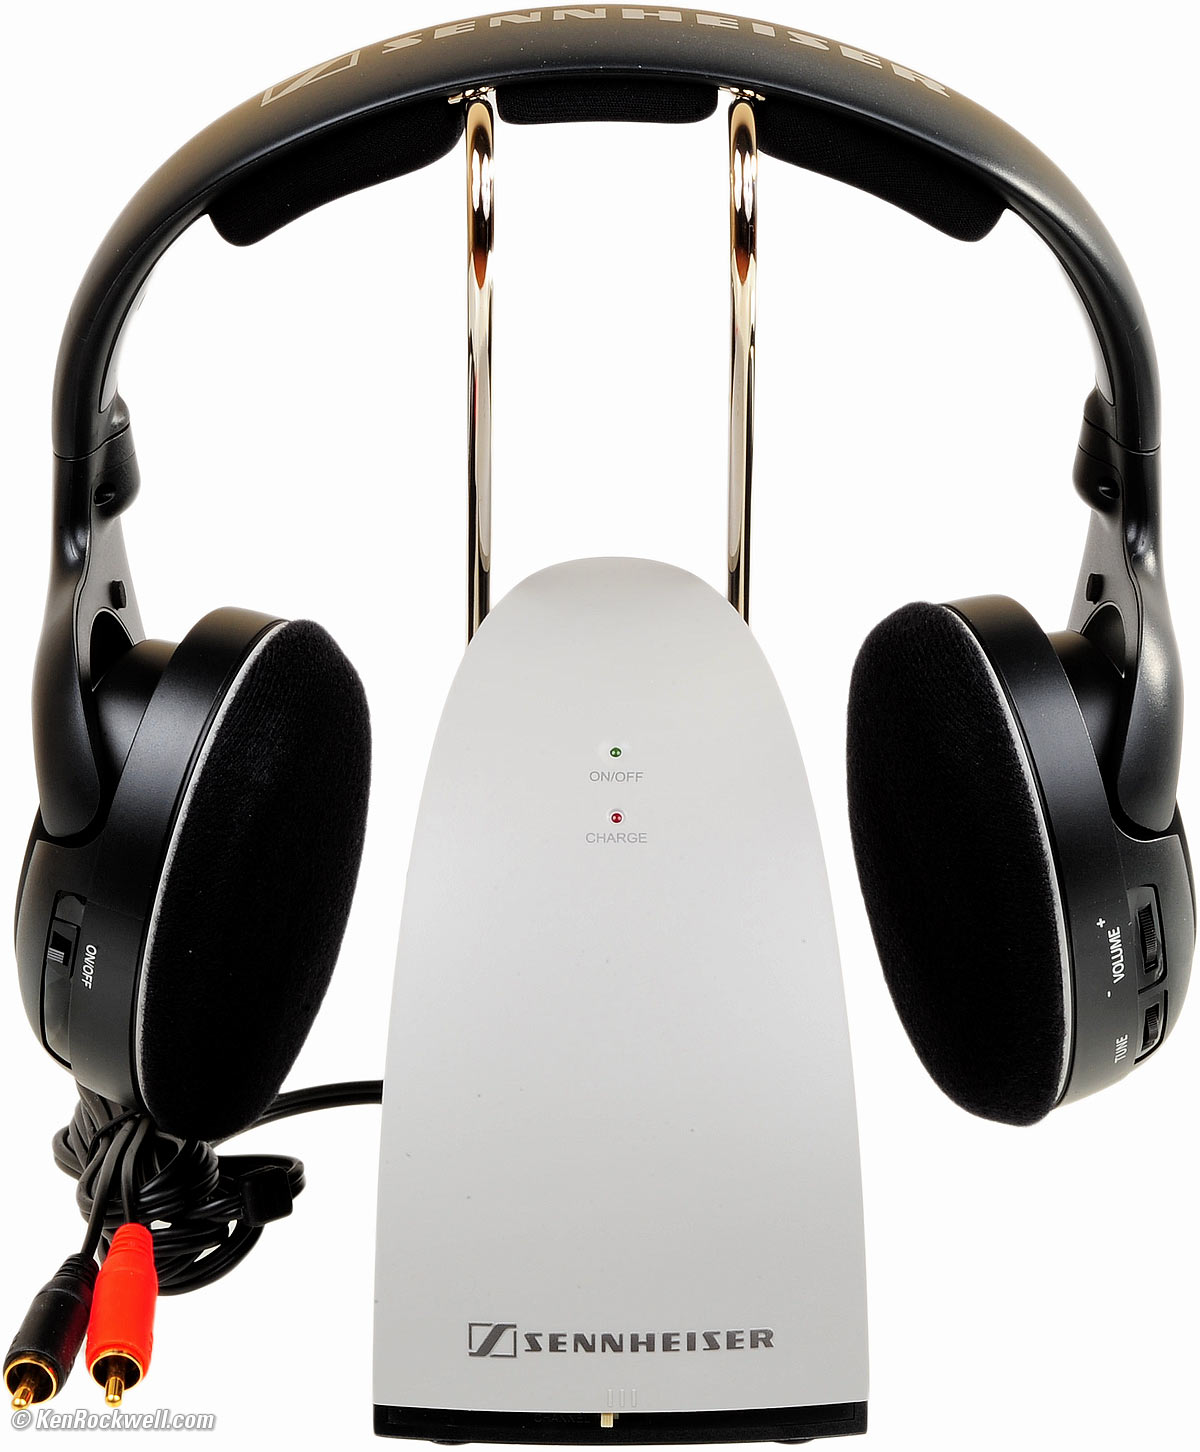 Productief Aanvulling Mier Sennheiser RS 120 wireless headphone review